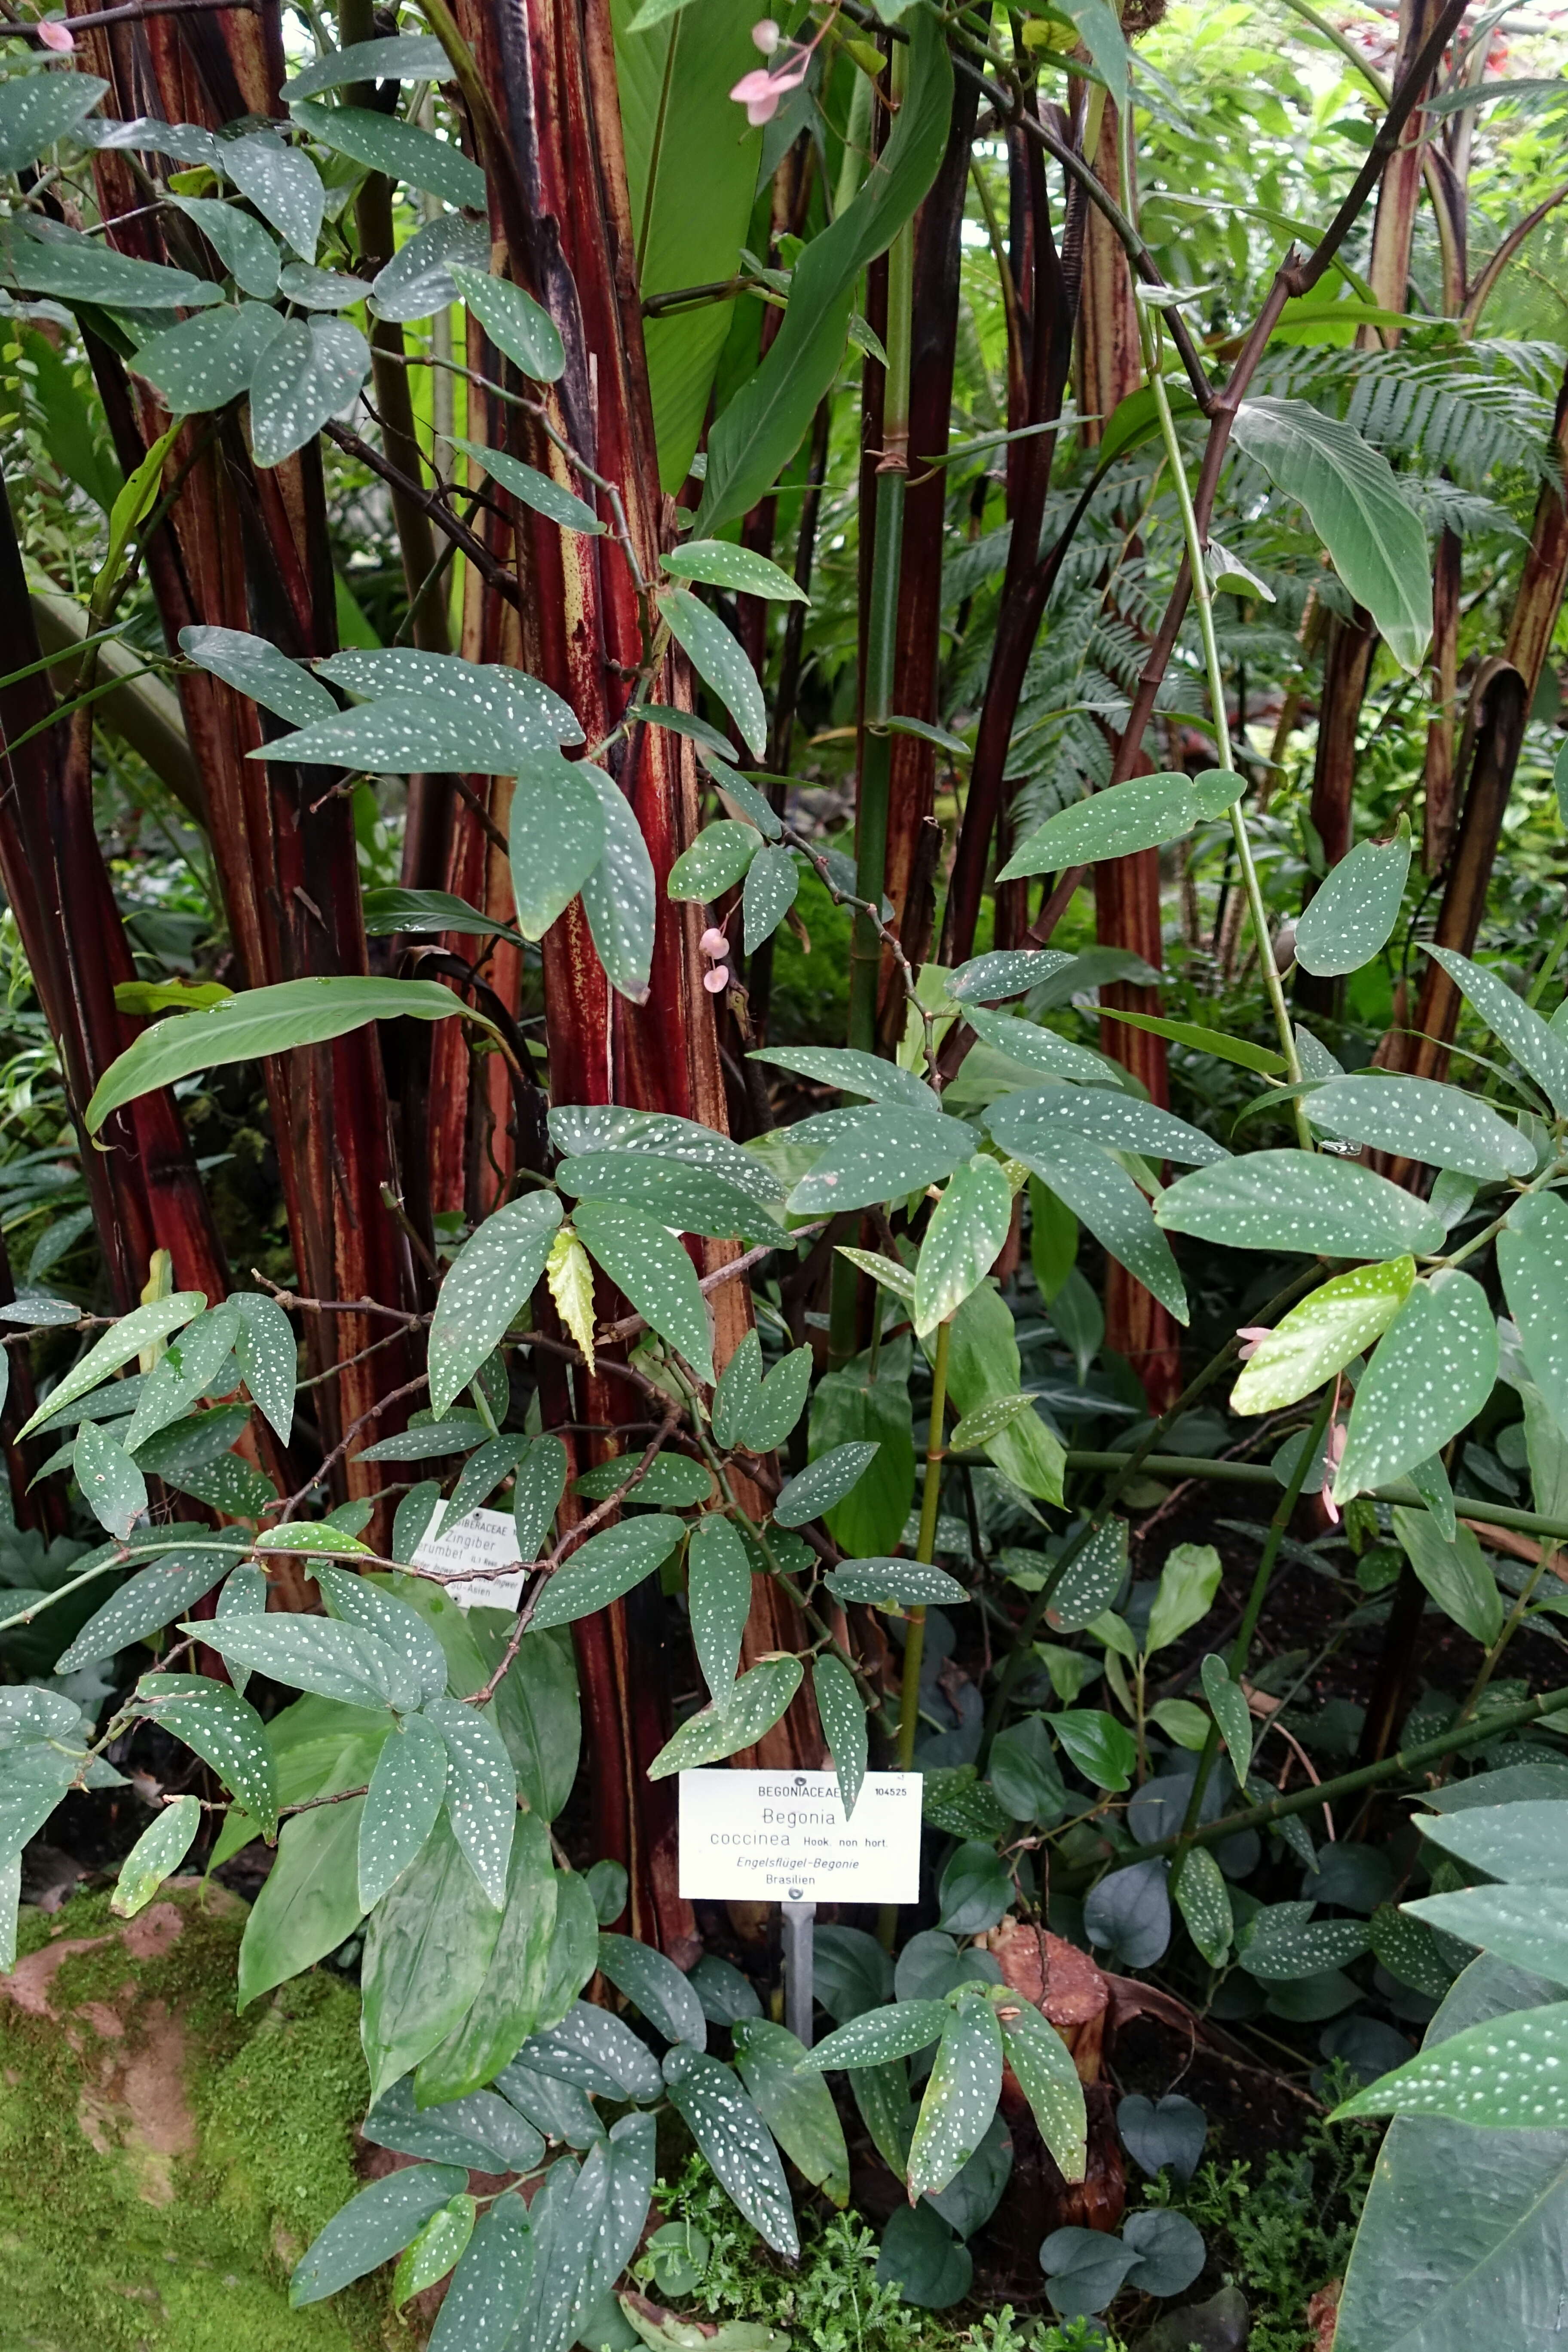 Image of scarlet begonia